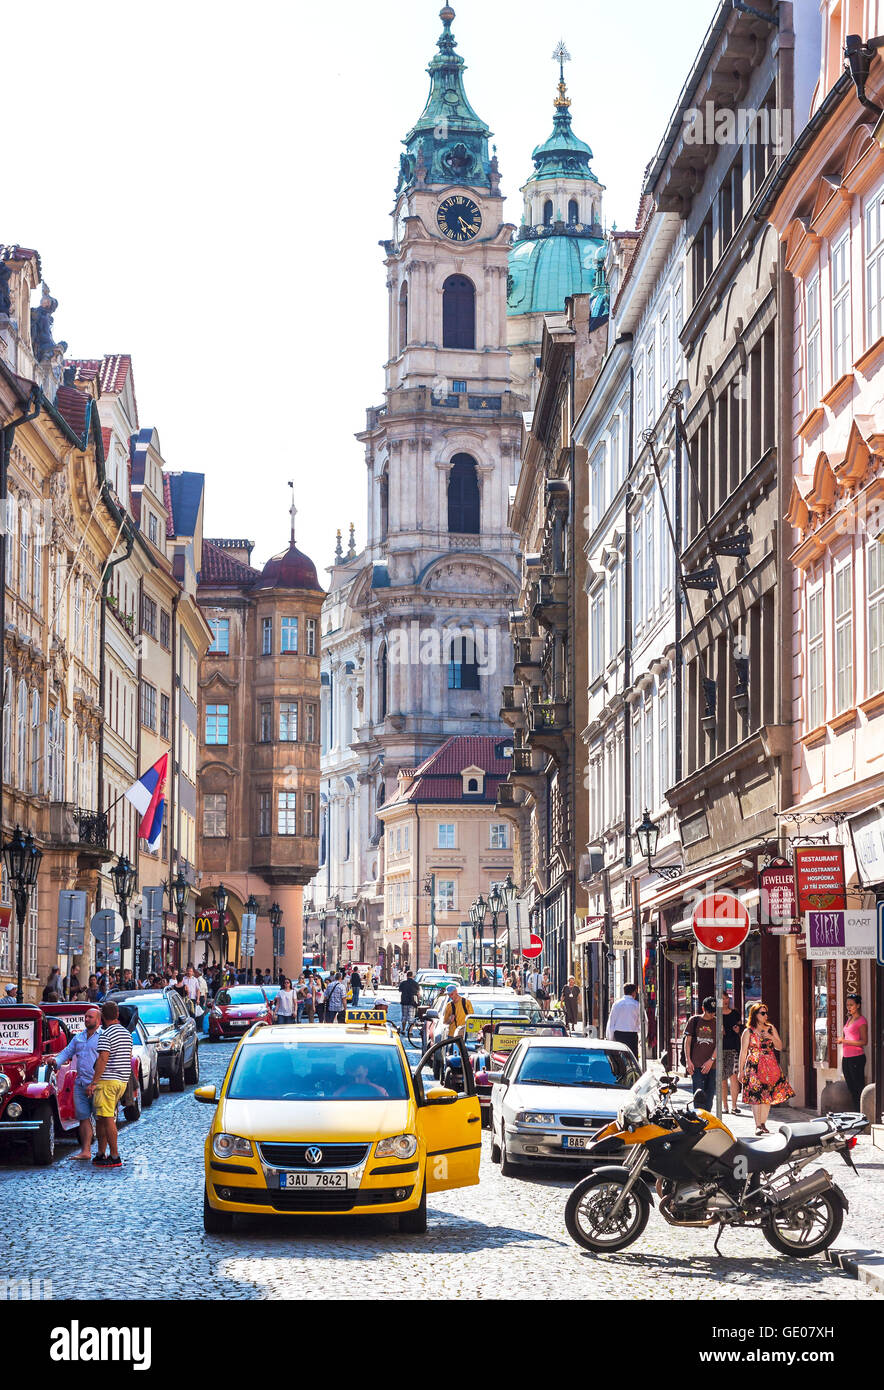 Prag, Tschechische Republik - 12. Juni 2014: Straße von Prag überfüllt mit Touristen und Fahrzeugen. Stockfoto